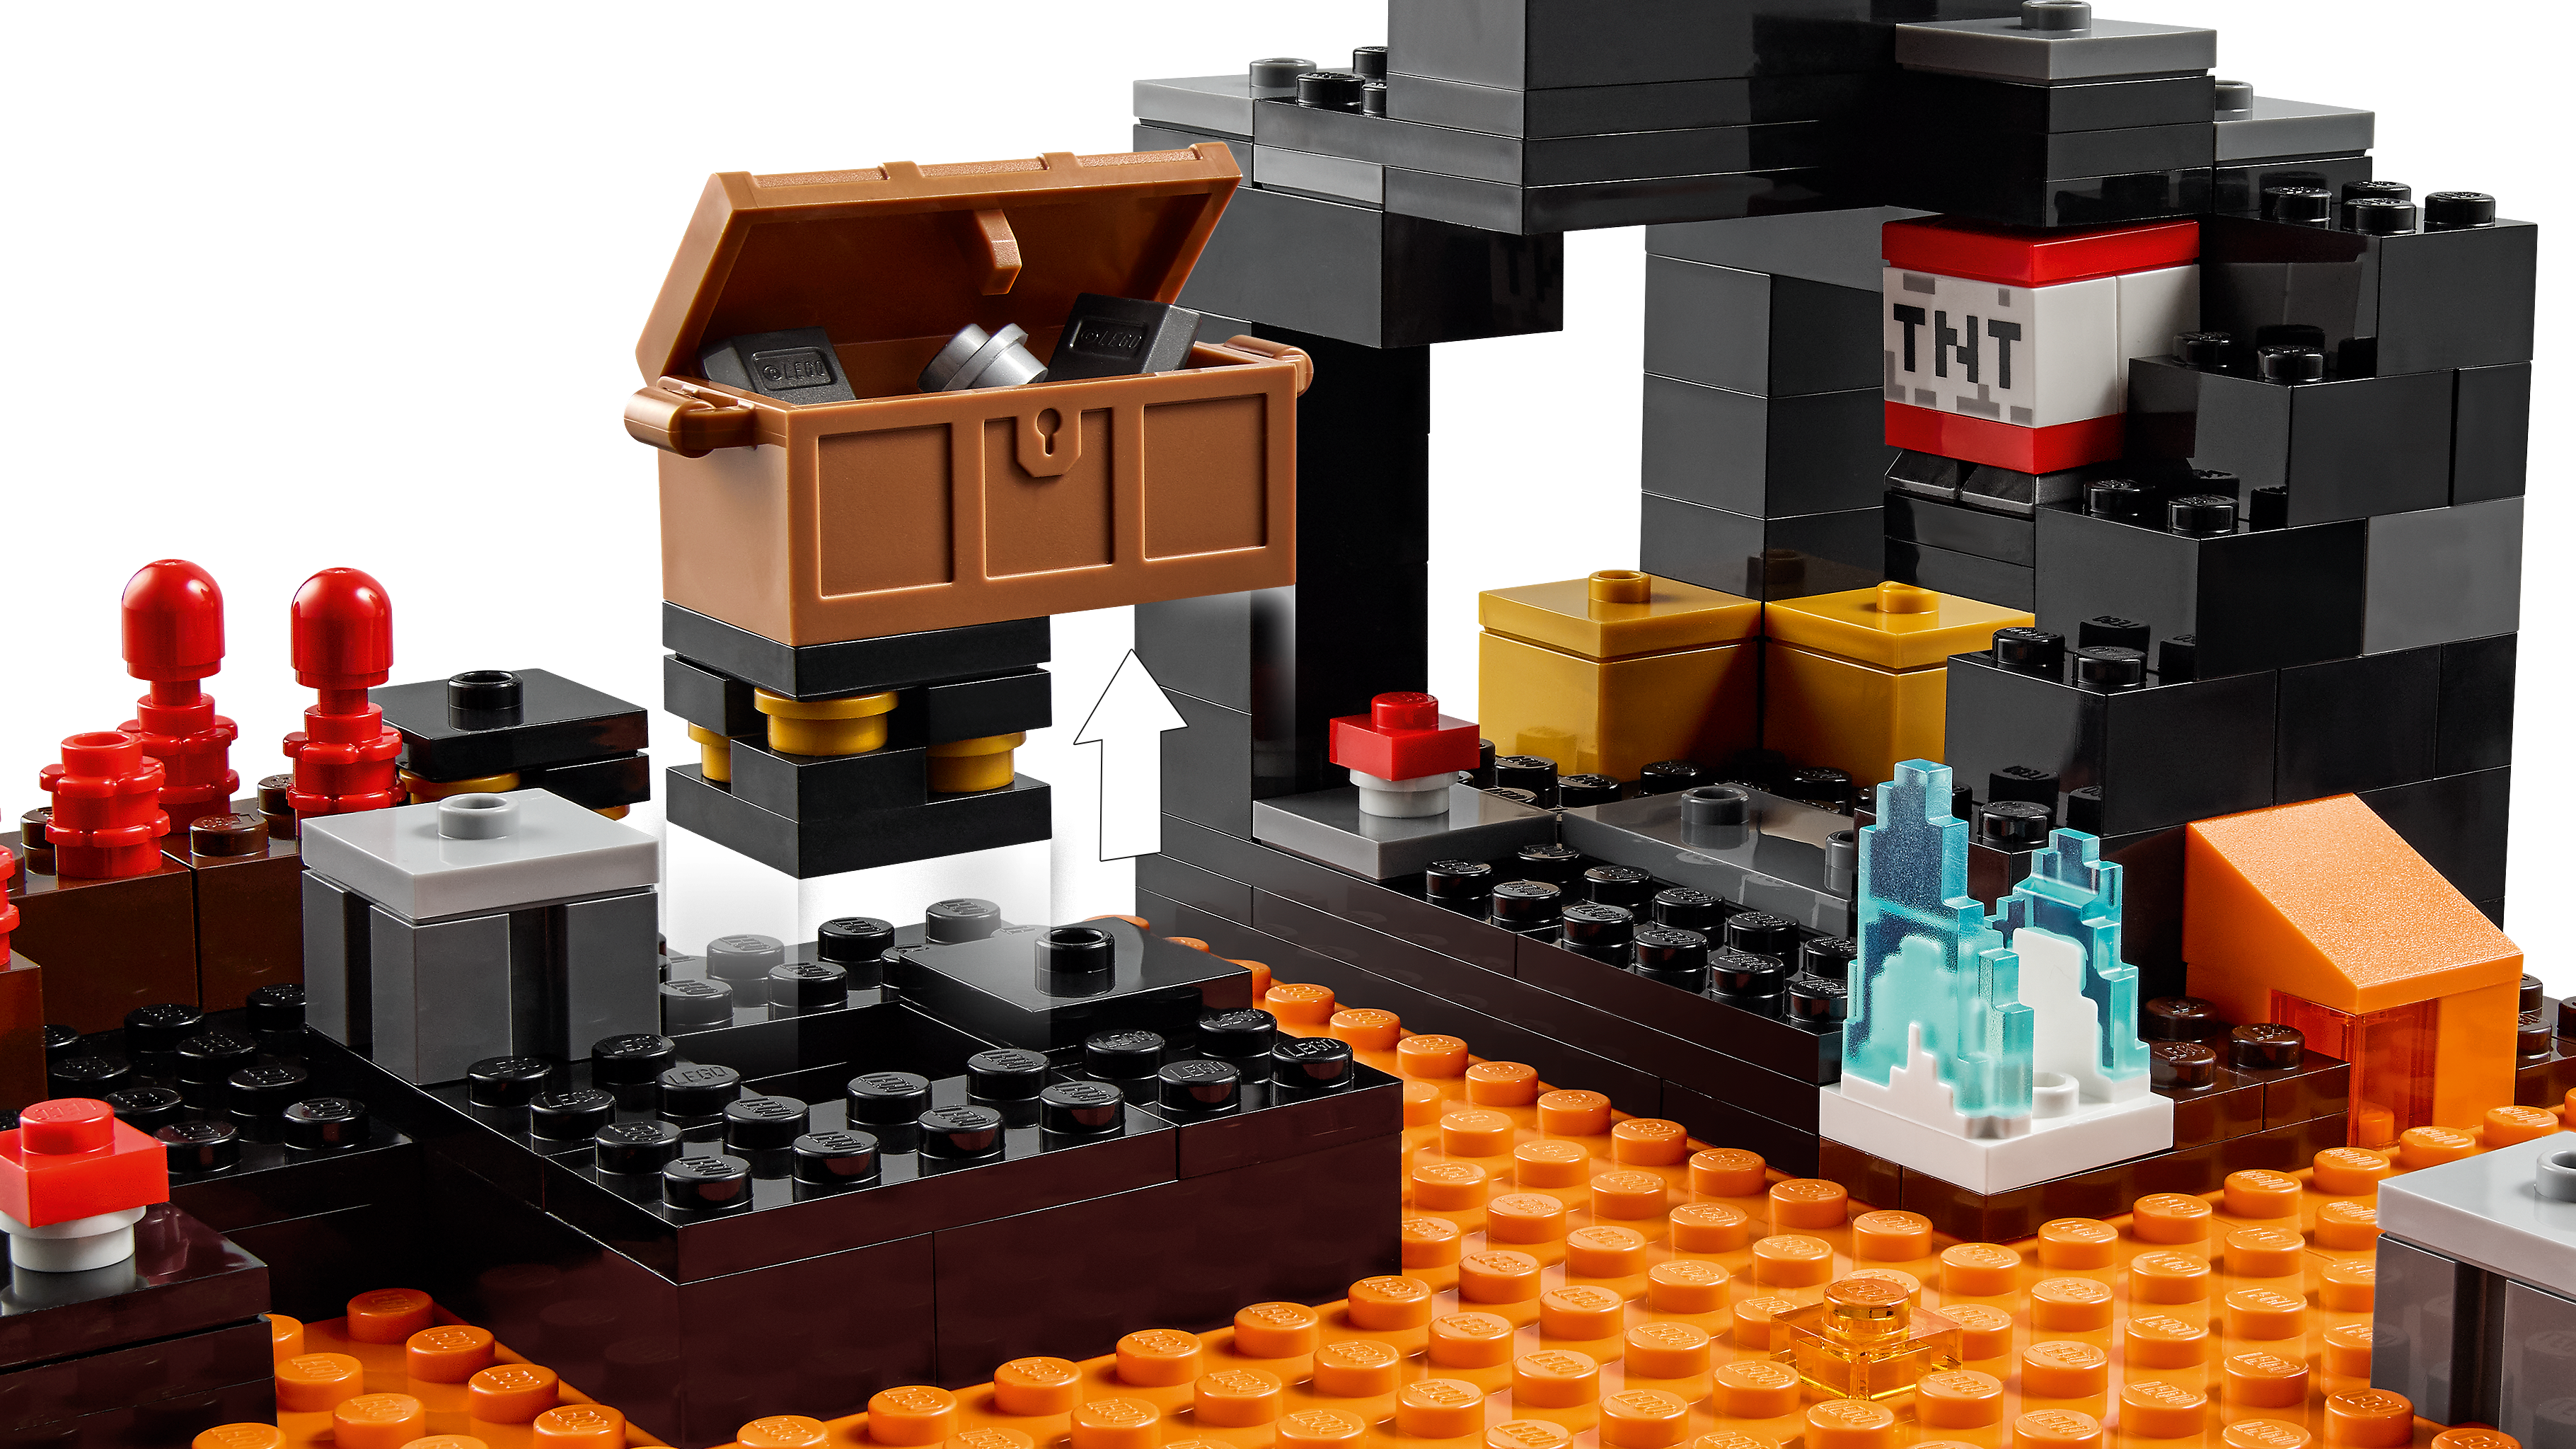 ネザーの砦 21185 - レゴ®マインクラフト セット - LEGO.comキッズ